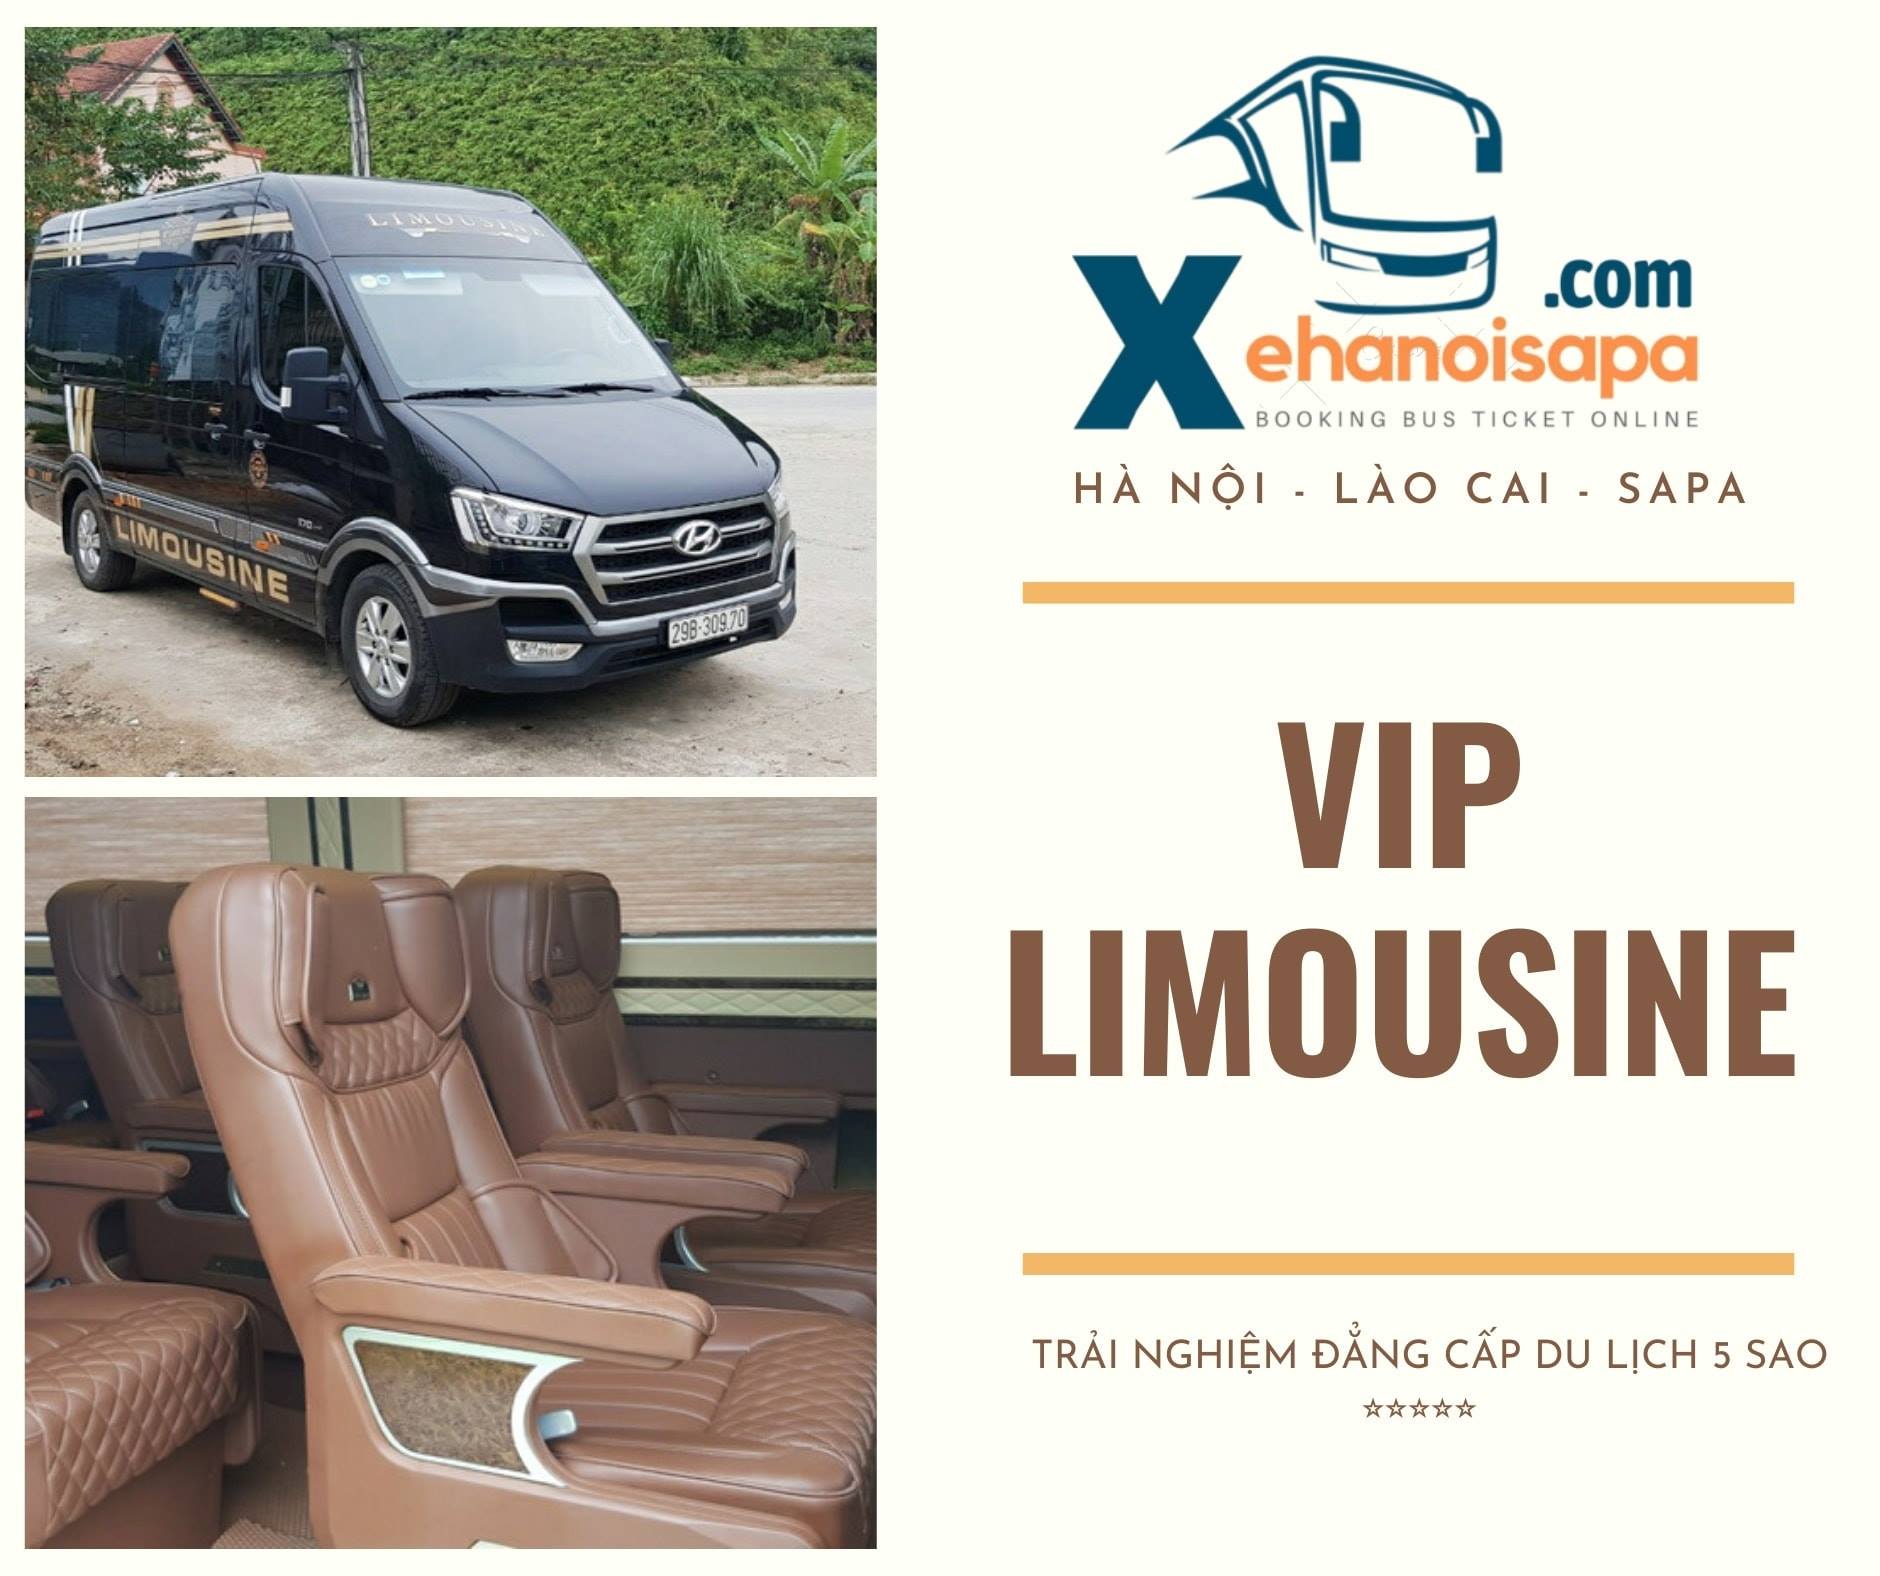 Xe Limousine đi Lào Cai - Đặt vé nhanh tại XEHANOISAPA.COM